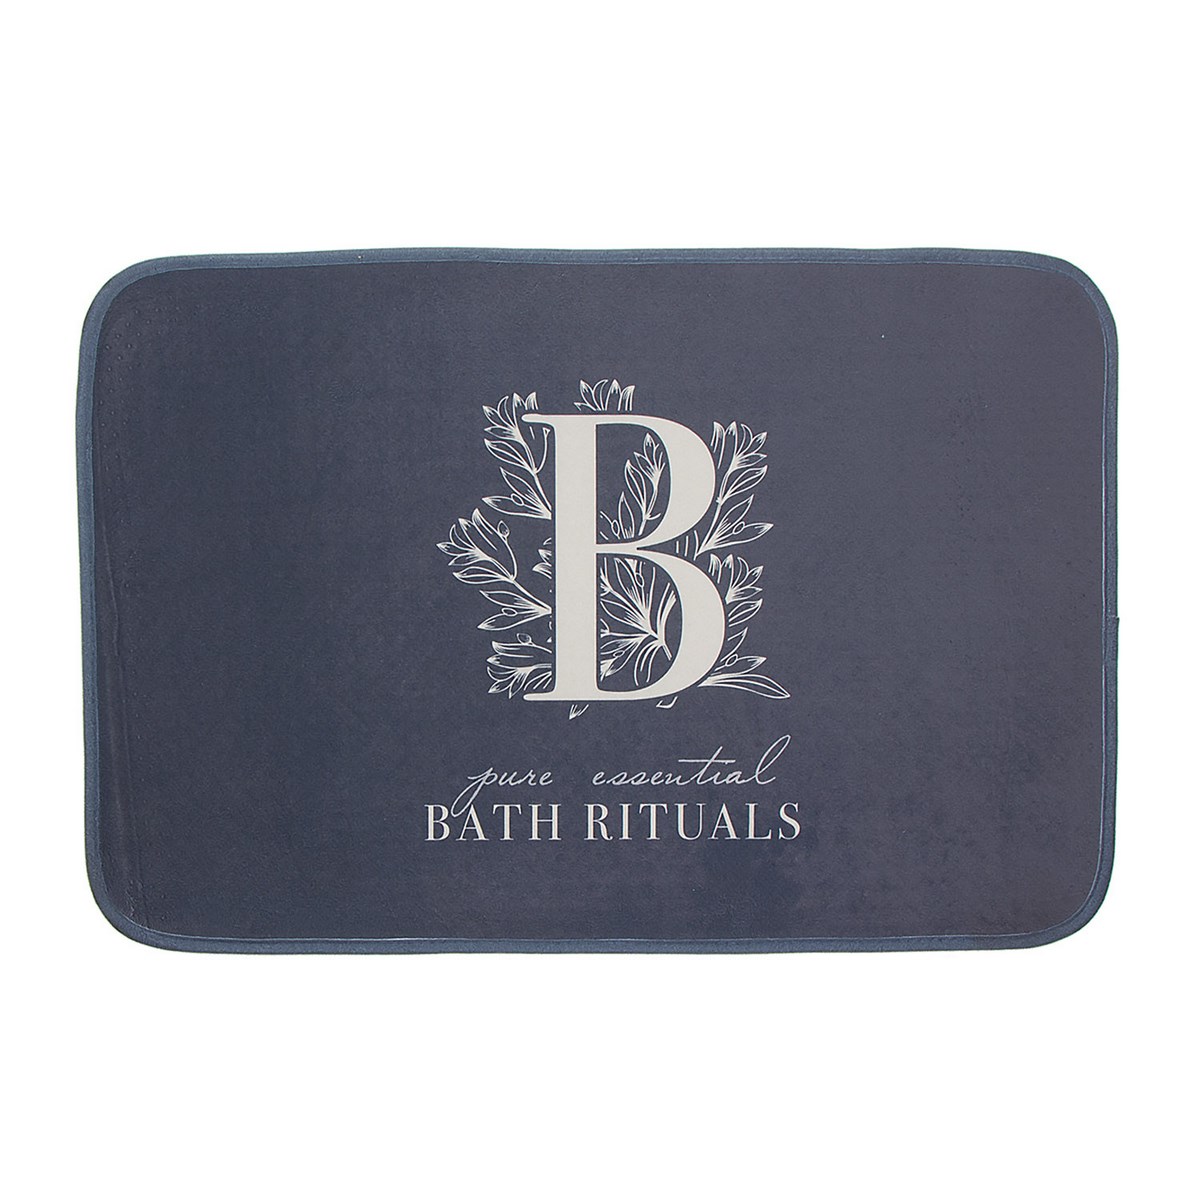 Коврик для ванной Bath Rituals Gray, 70х45 см, Полиэстер, D'casa, Испания, Bath Rituals